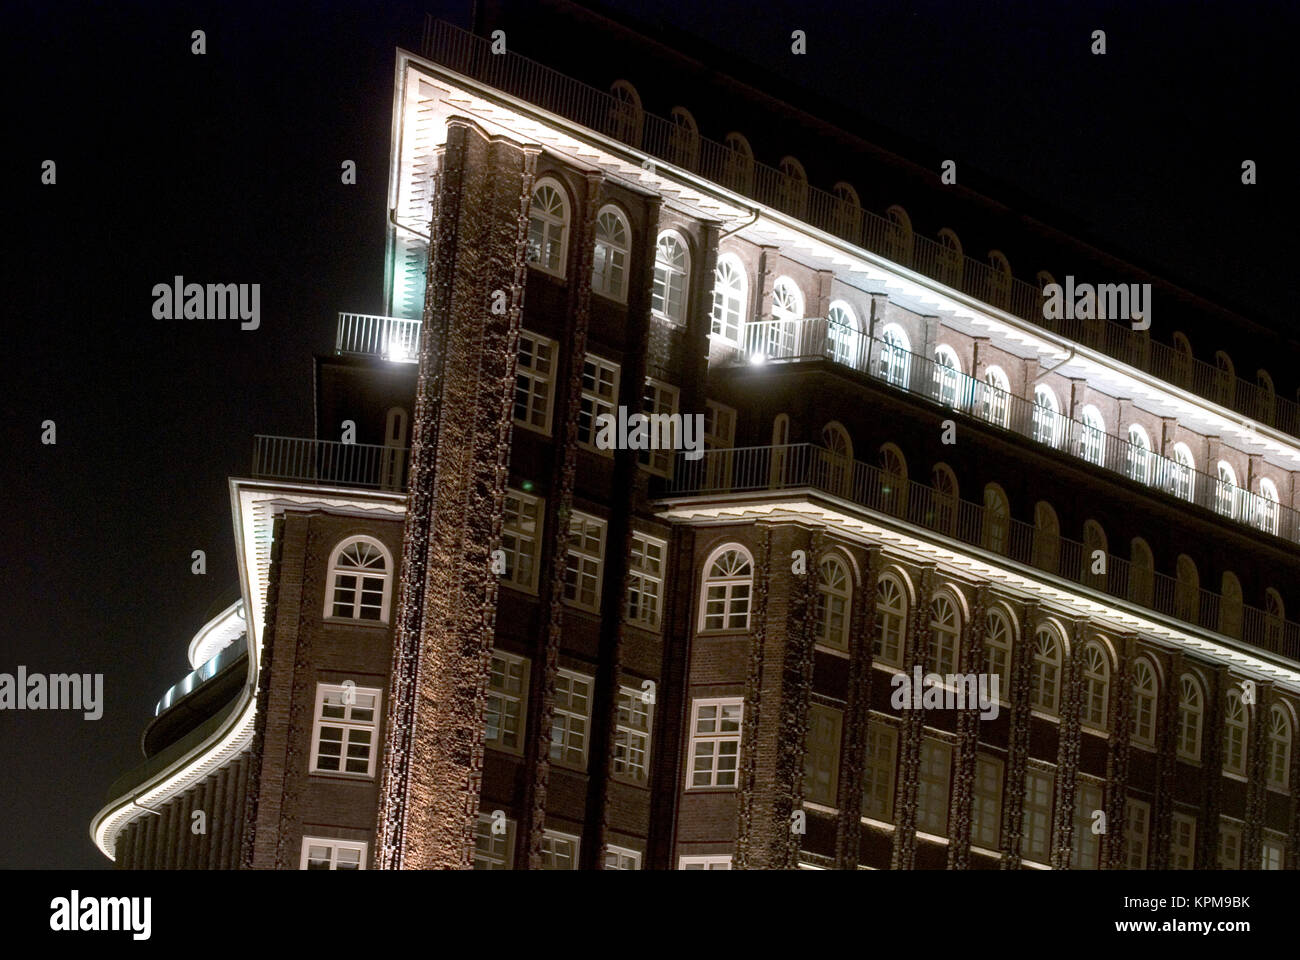 Chile-Haus, Hamburg. Stock Photo